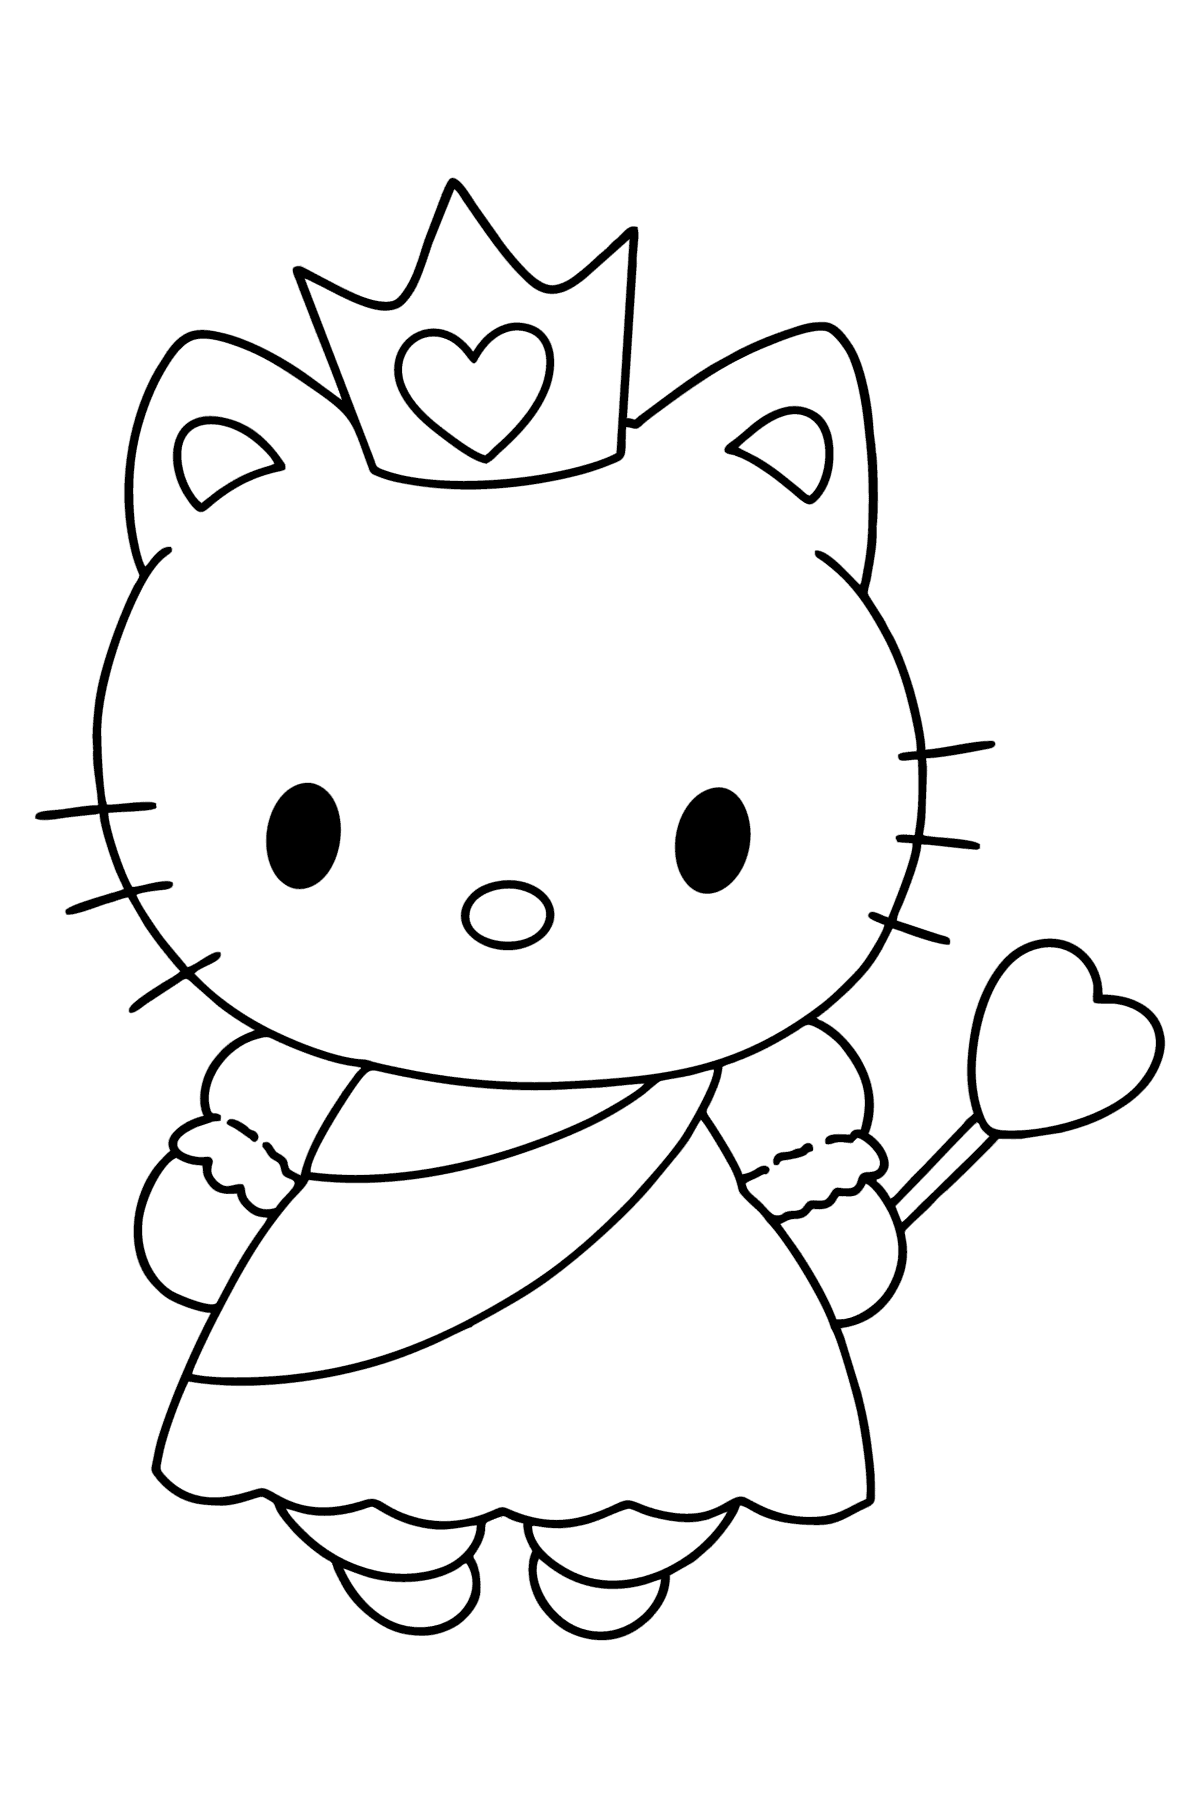 Dibujo de Princesa Hello Kitty para colorear - Dibujos para Colorear para Niños